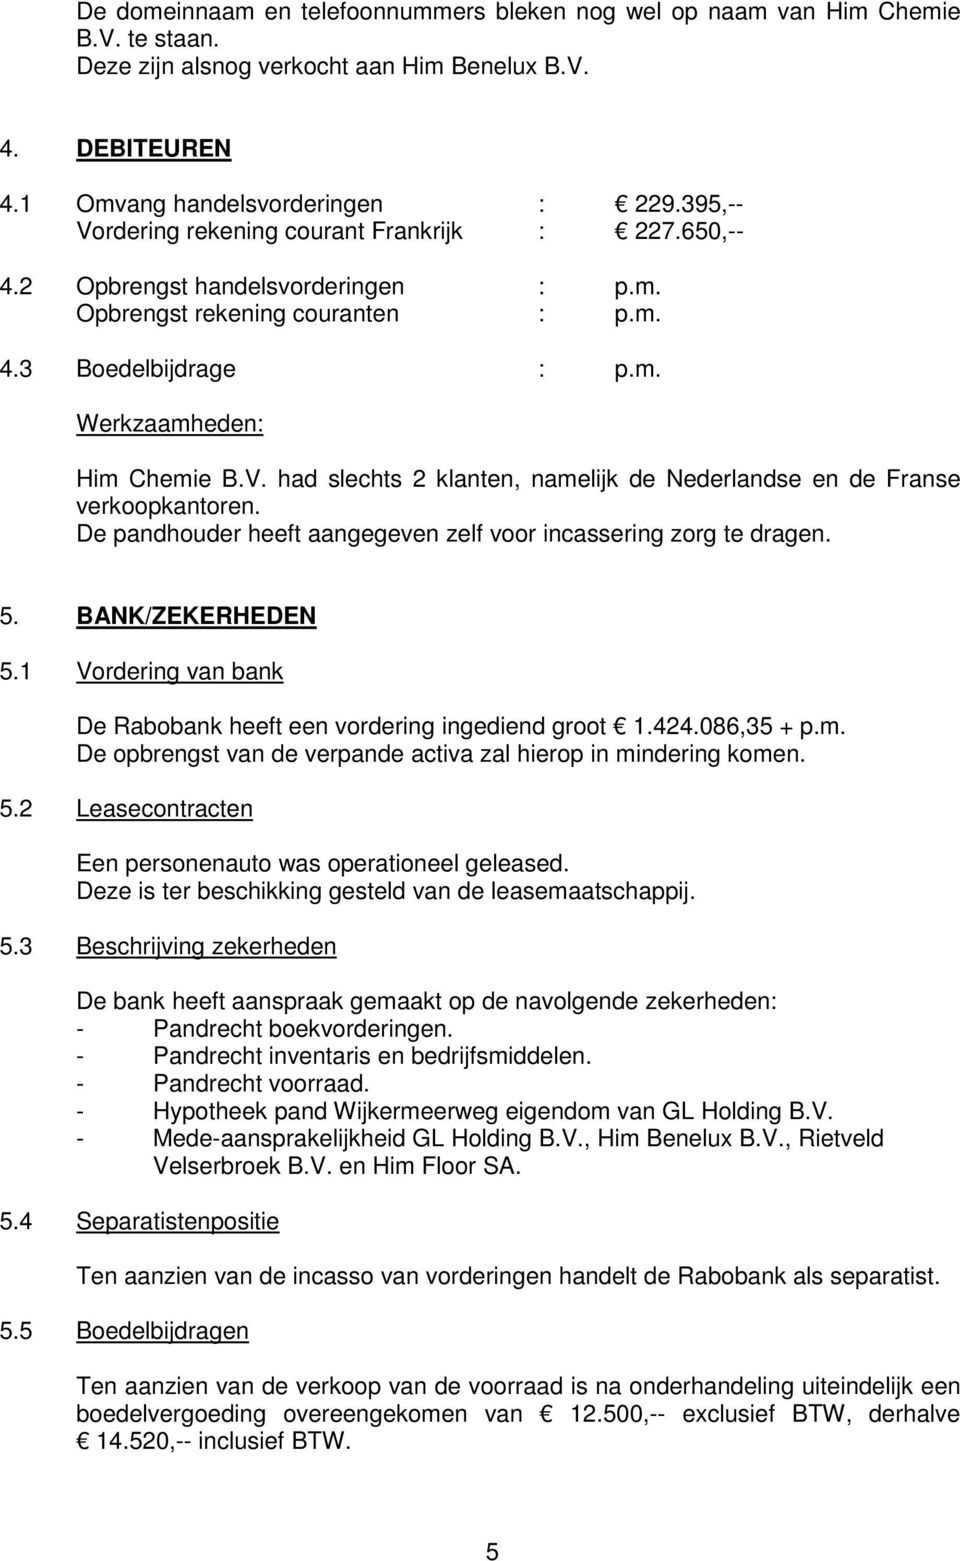 De pandhouder heeft aangegeven zelf voor incassering zorg te dragen. 5. BANK/ZEKERHEDEN 5.1 Vordering van bank De Rabobank heeft een vordering ingediend groot 1.424.086,35 + p.m.